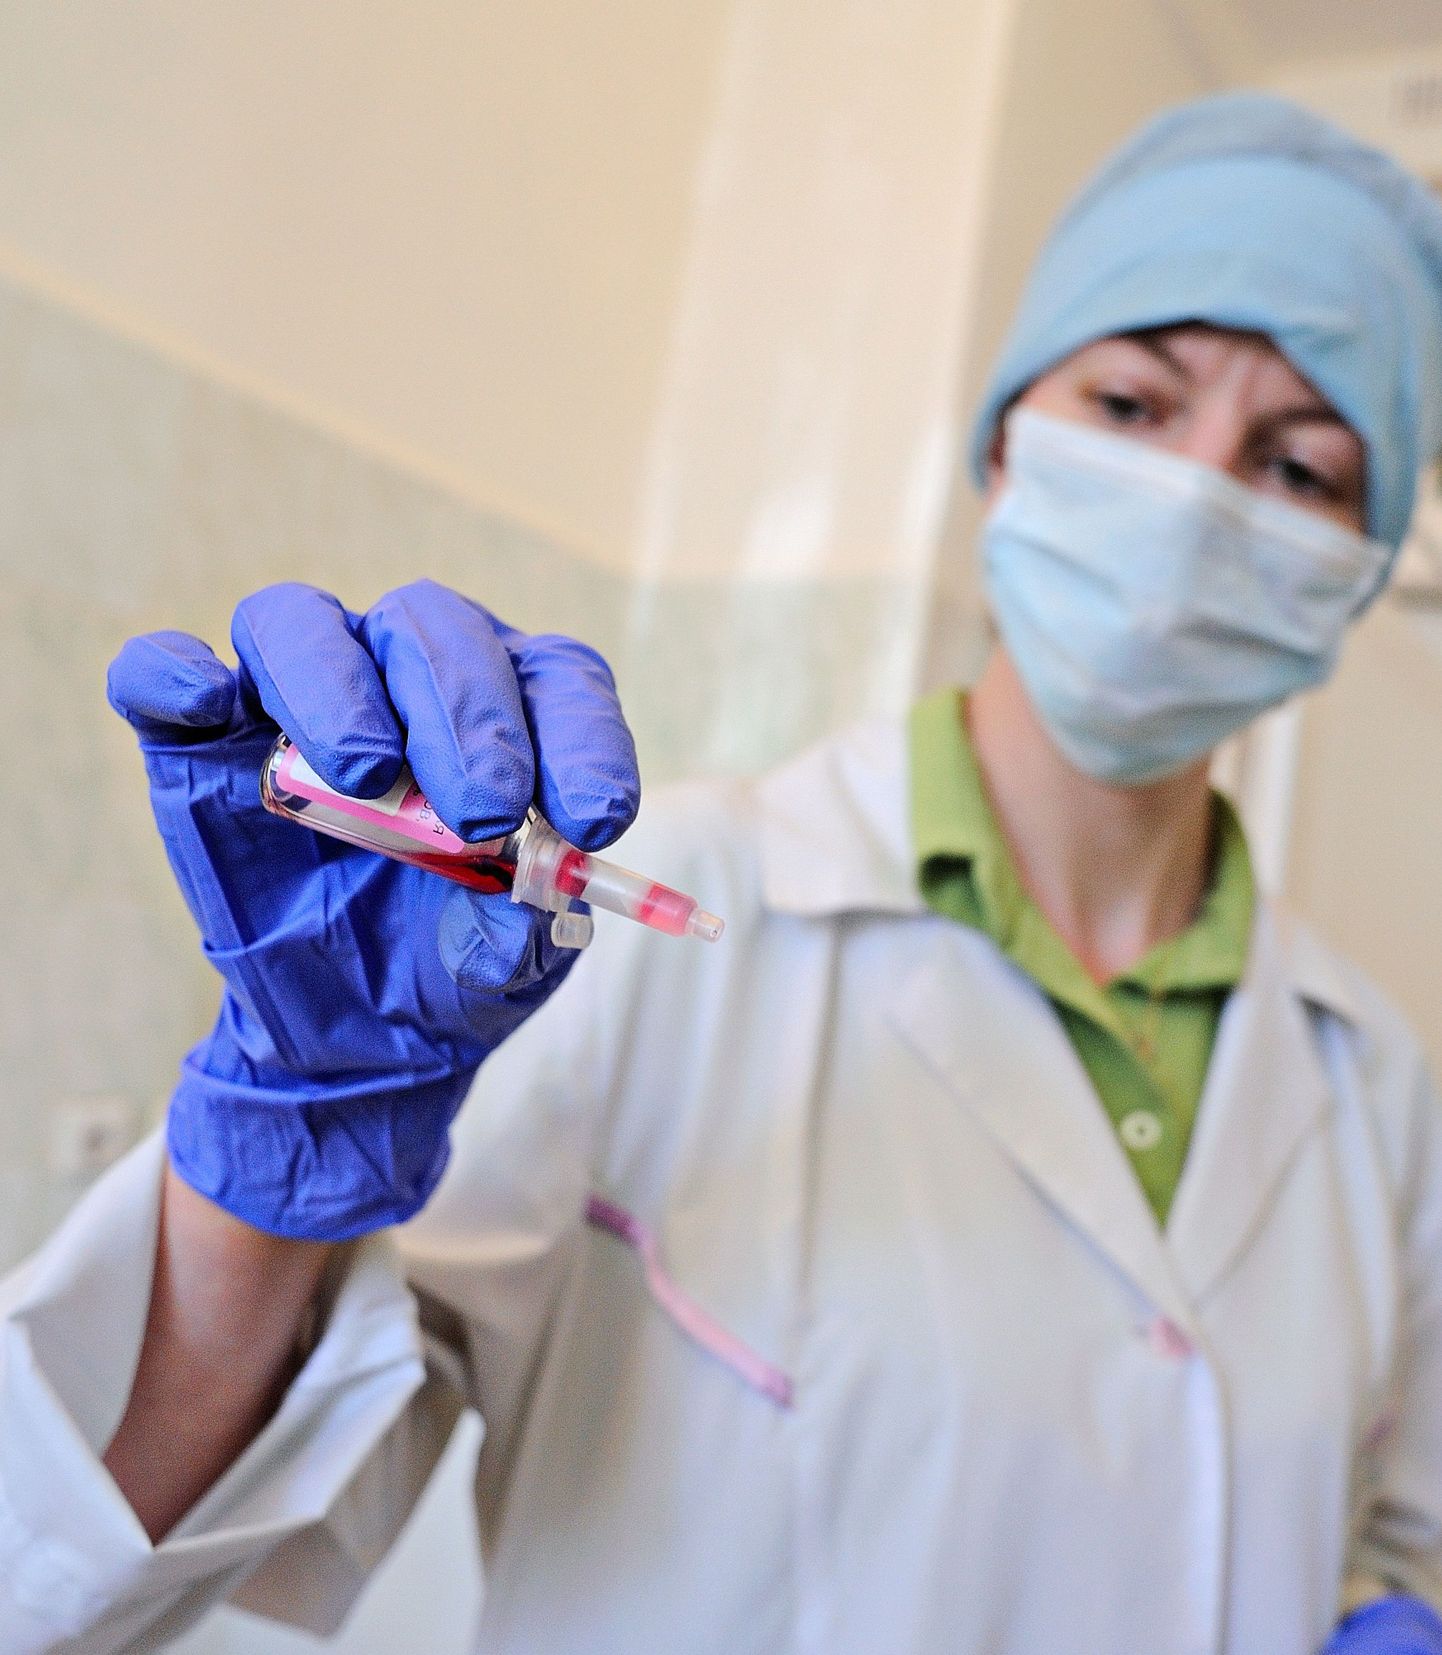 Jekaterinburgi tohter valmistab ette
poliomüeliidi vastast vaktsiini.